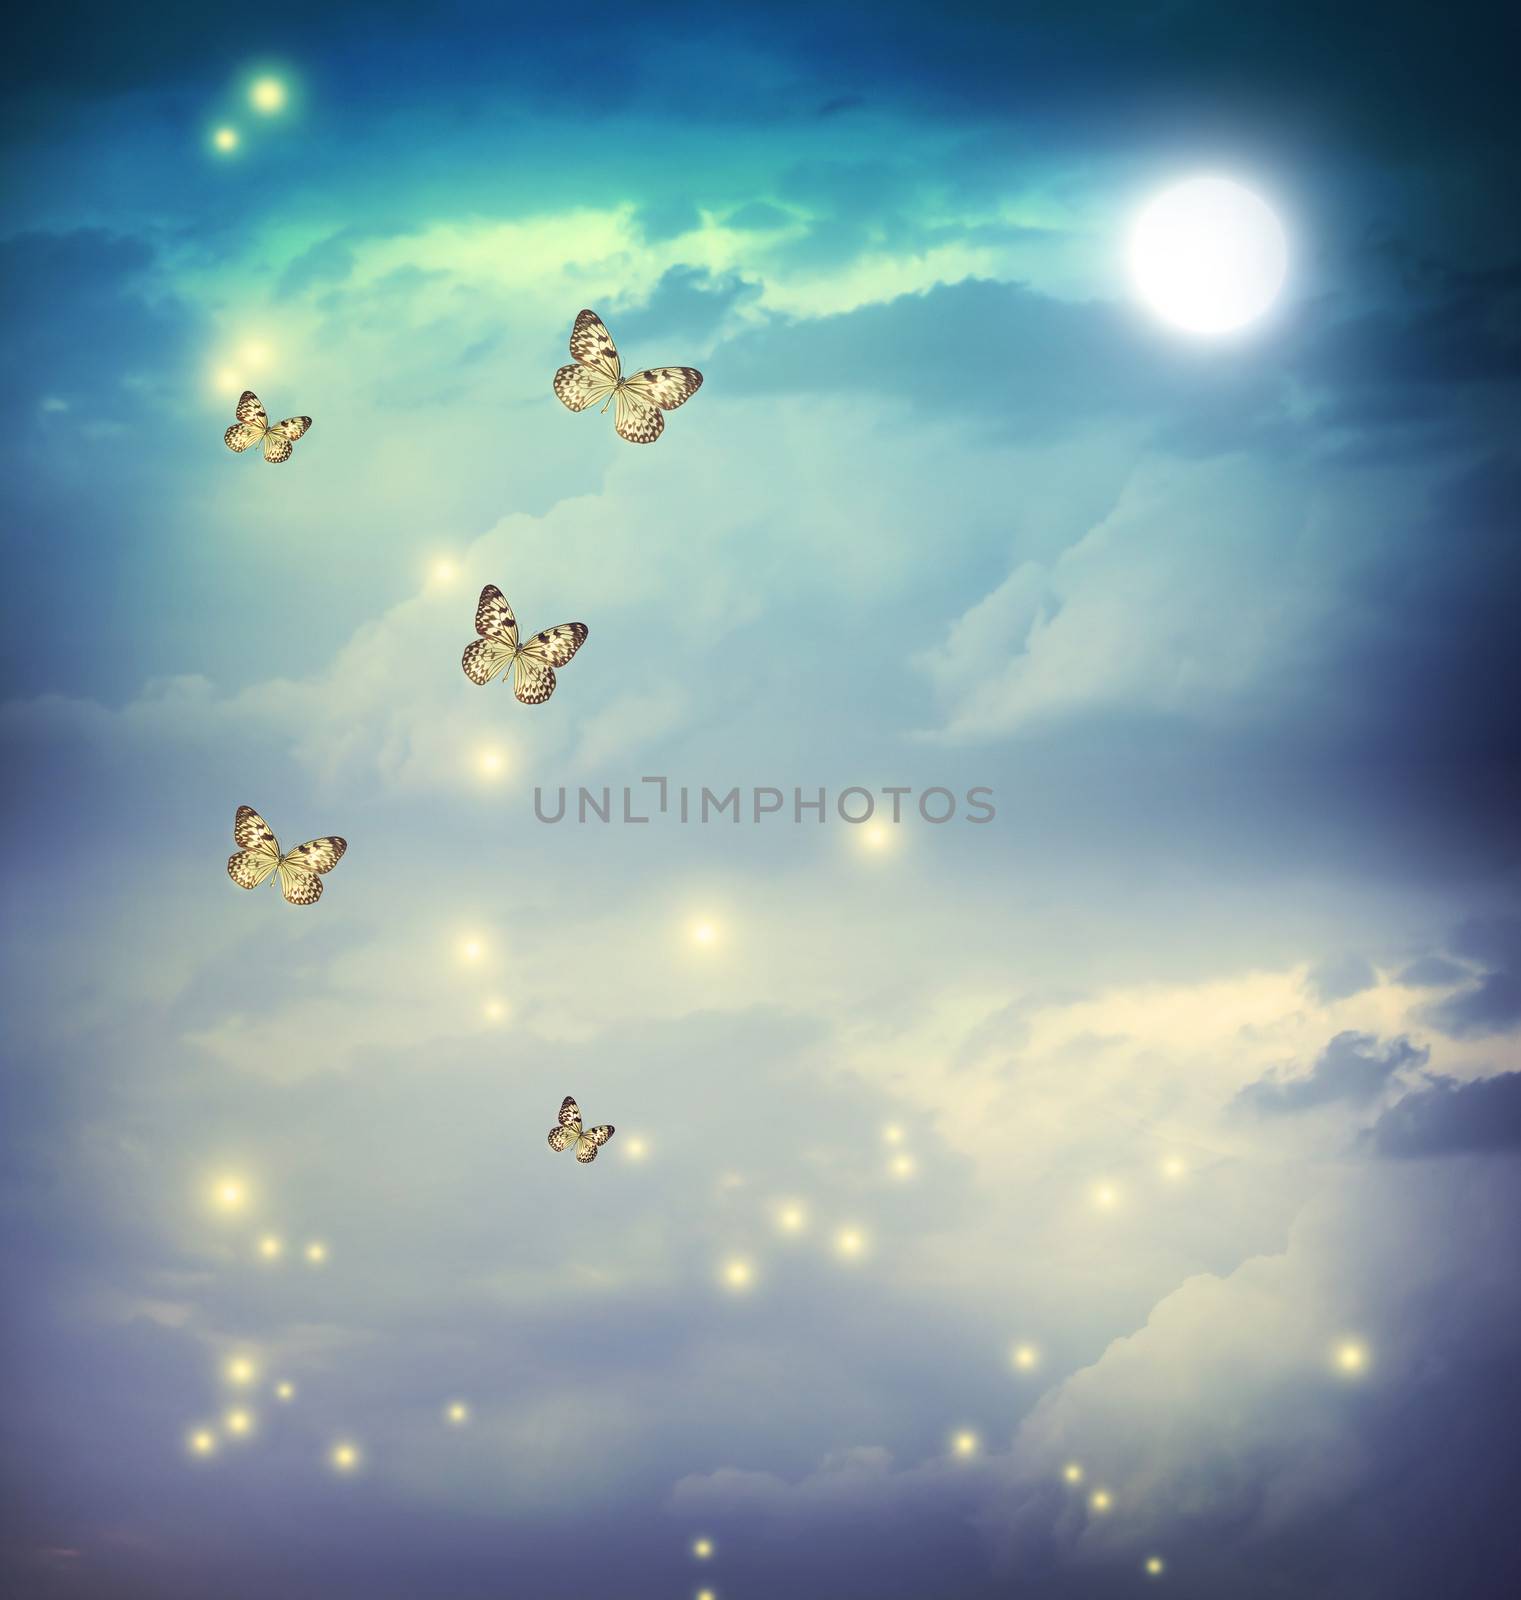 Butterflies in a fantasy moonligt landscape by melpomene